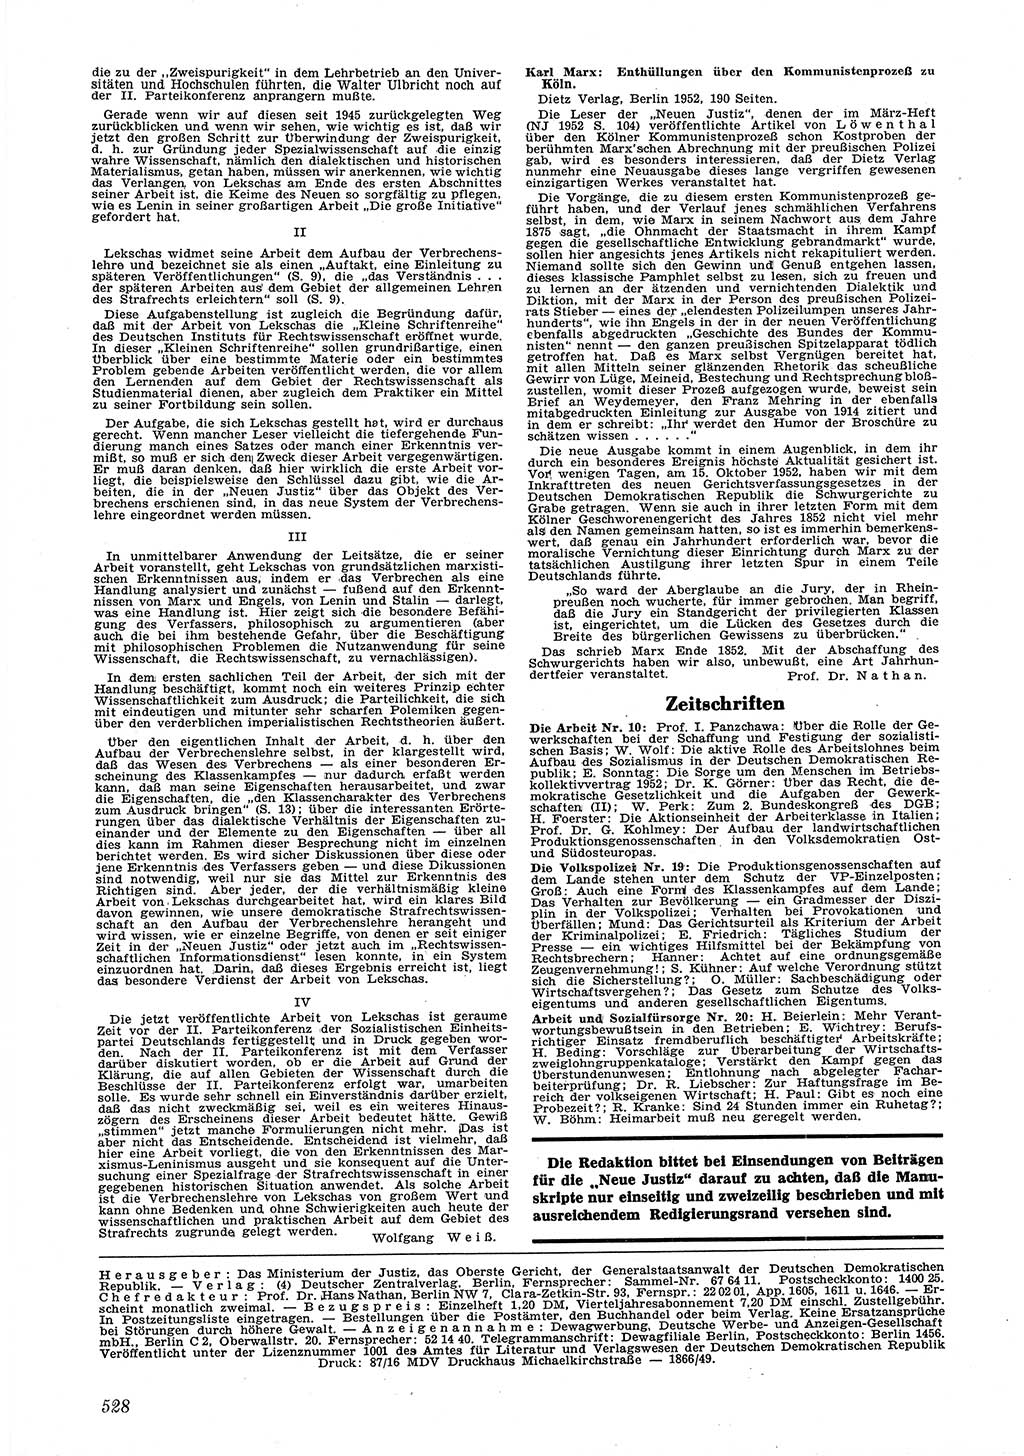 Neue Justiz (NJ), Zeitschrift für Recht und Rechtswissenschaft [Deutsche Demokratische Republik (DDR)], 6. Jahrgang 1952, Seite 528 (NJ DDR 1952, S. 528)